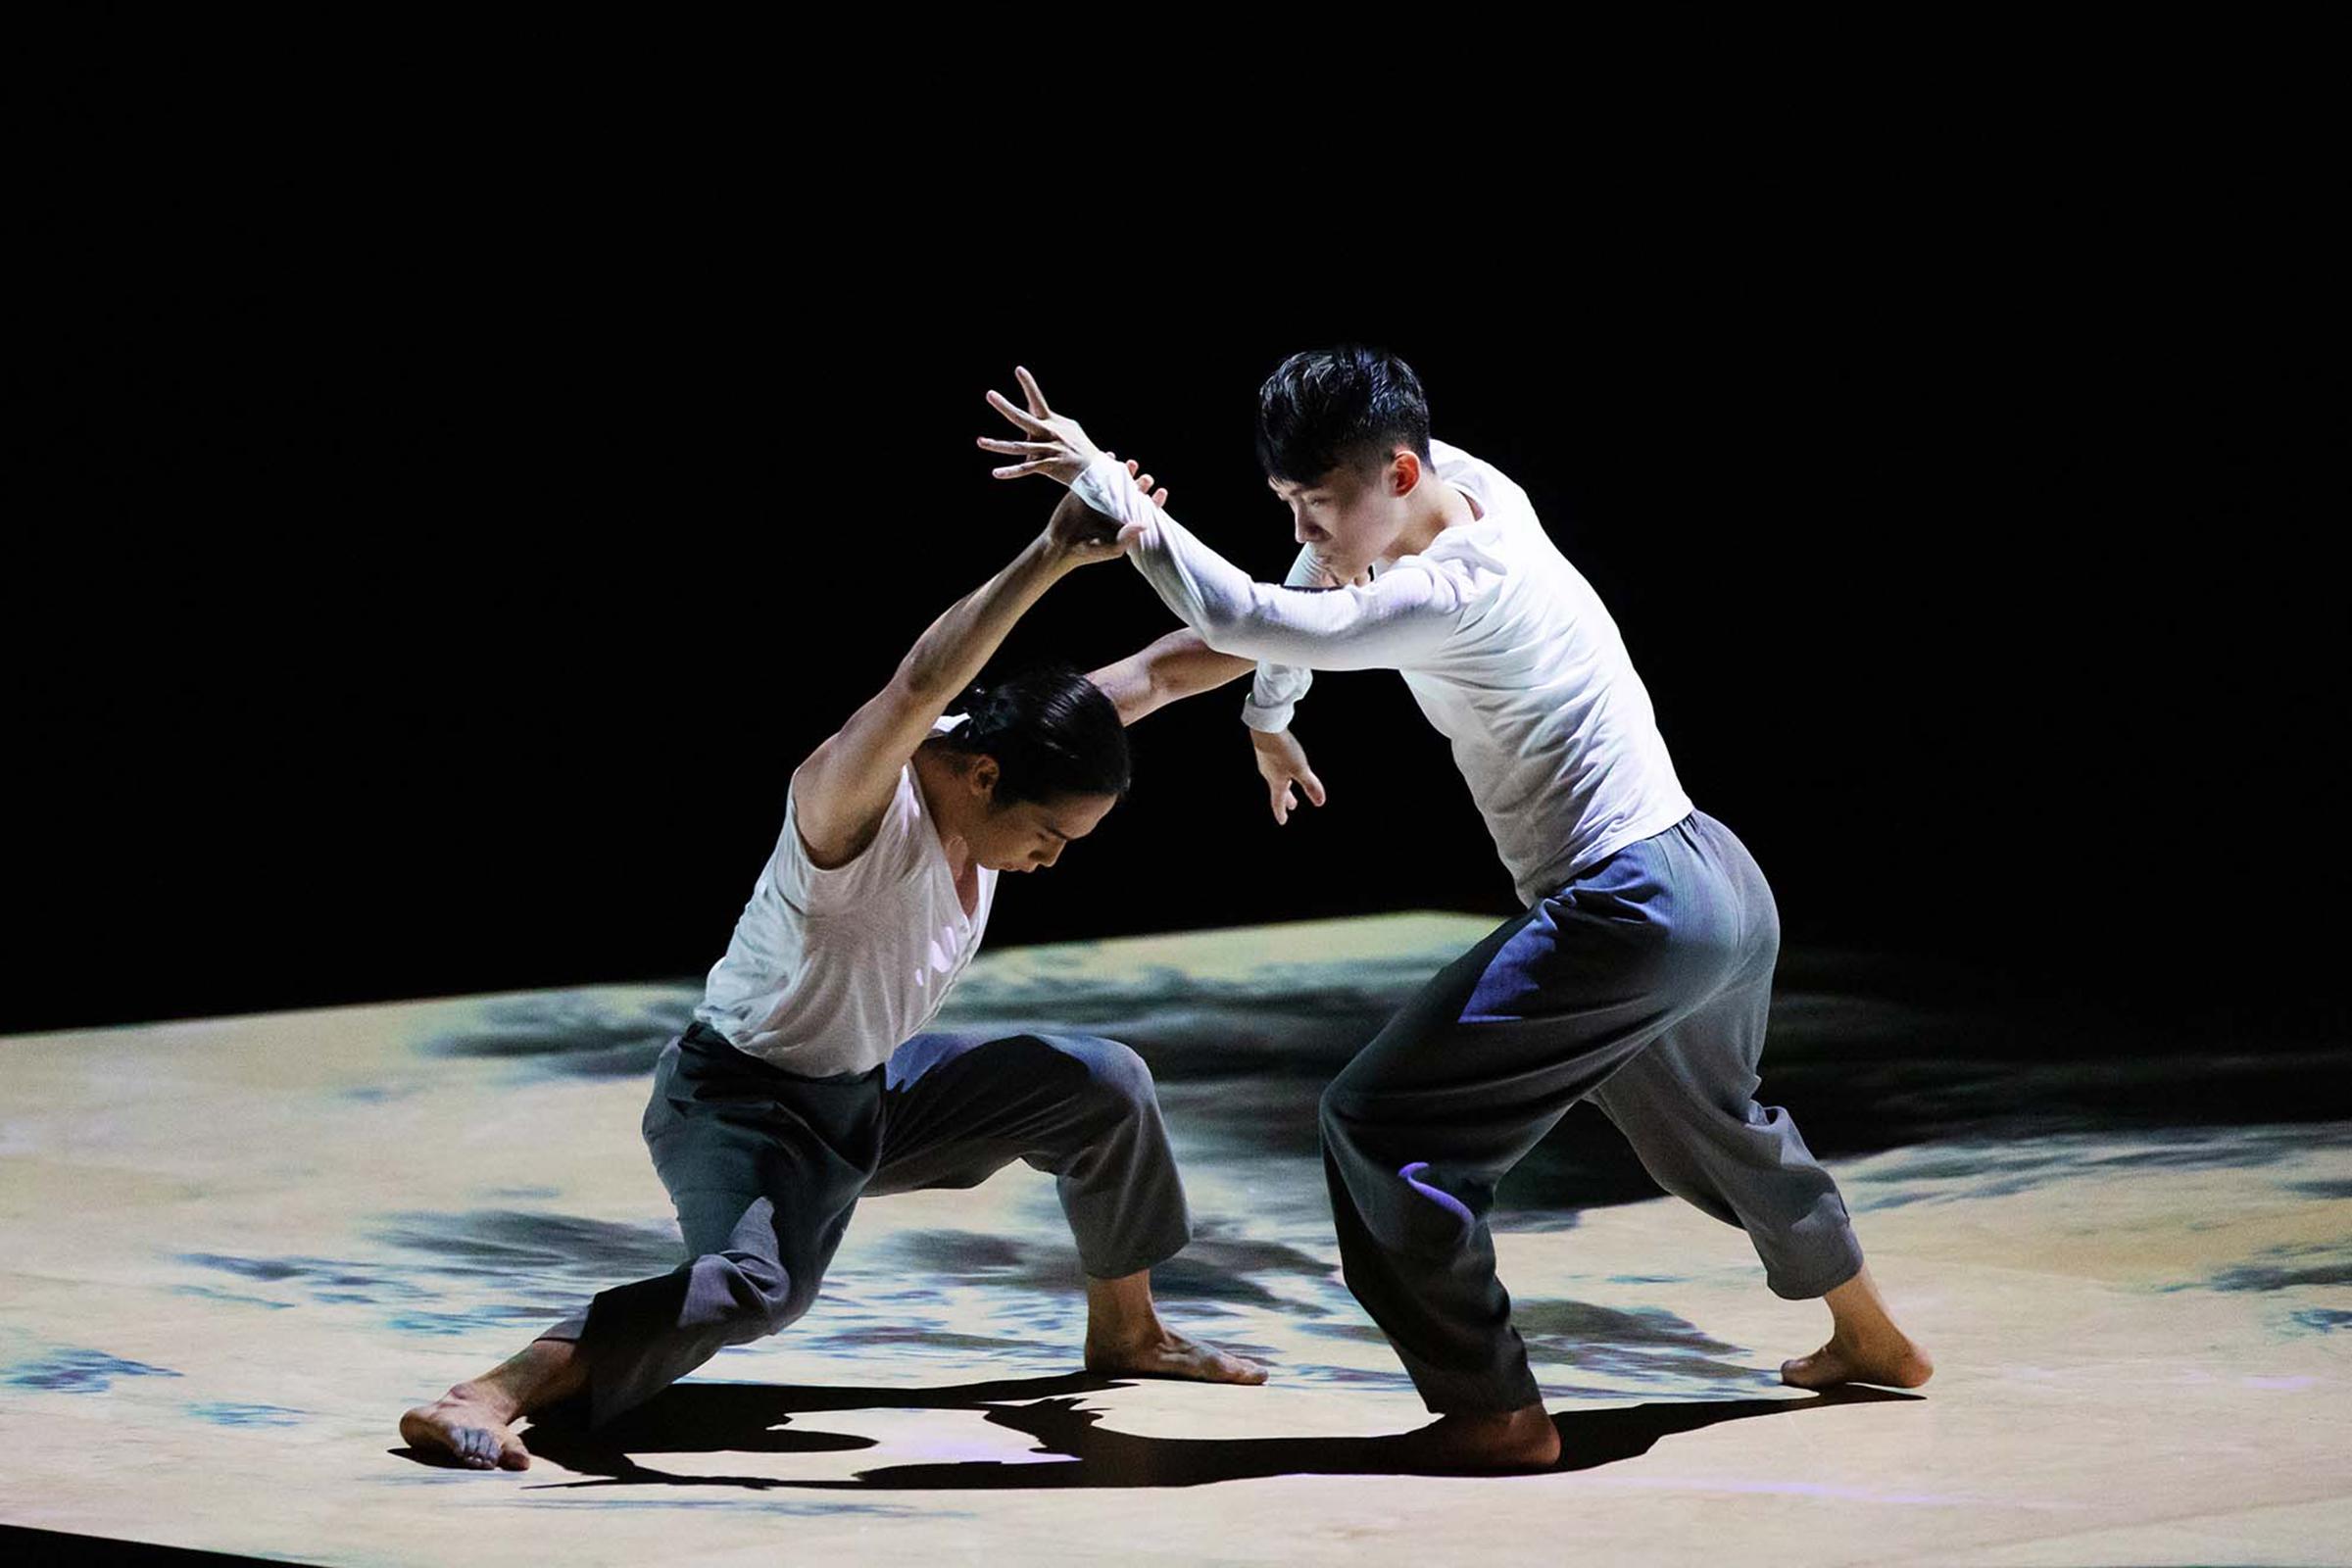 「香港周2023@曼谷」将于十月二十一日至十一月十二日在泰国曼谷举行，香港舞蹈团将呈献糅合中国舞与武术的作品《凝》。（图片来源：Henry Wong）